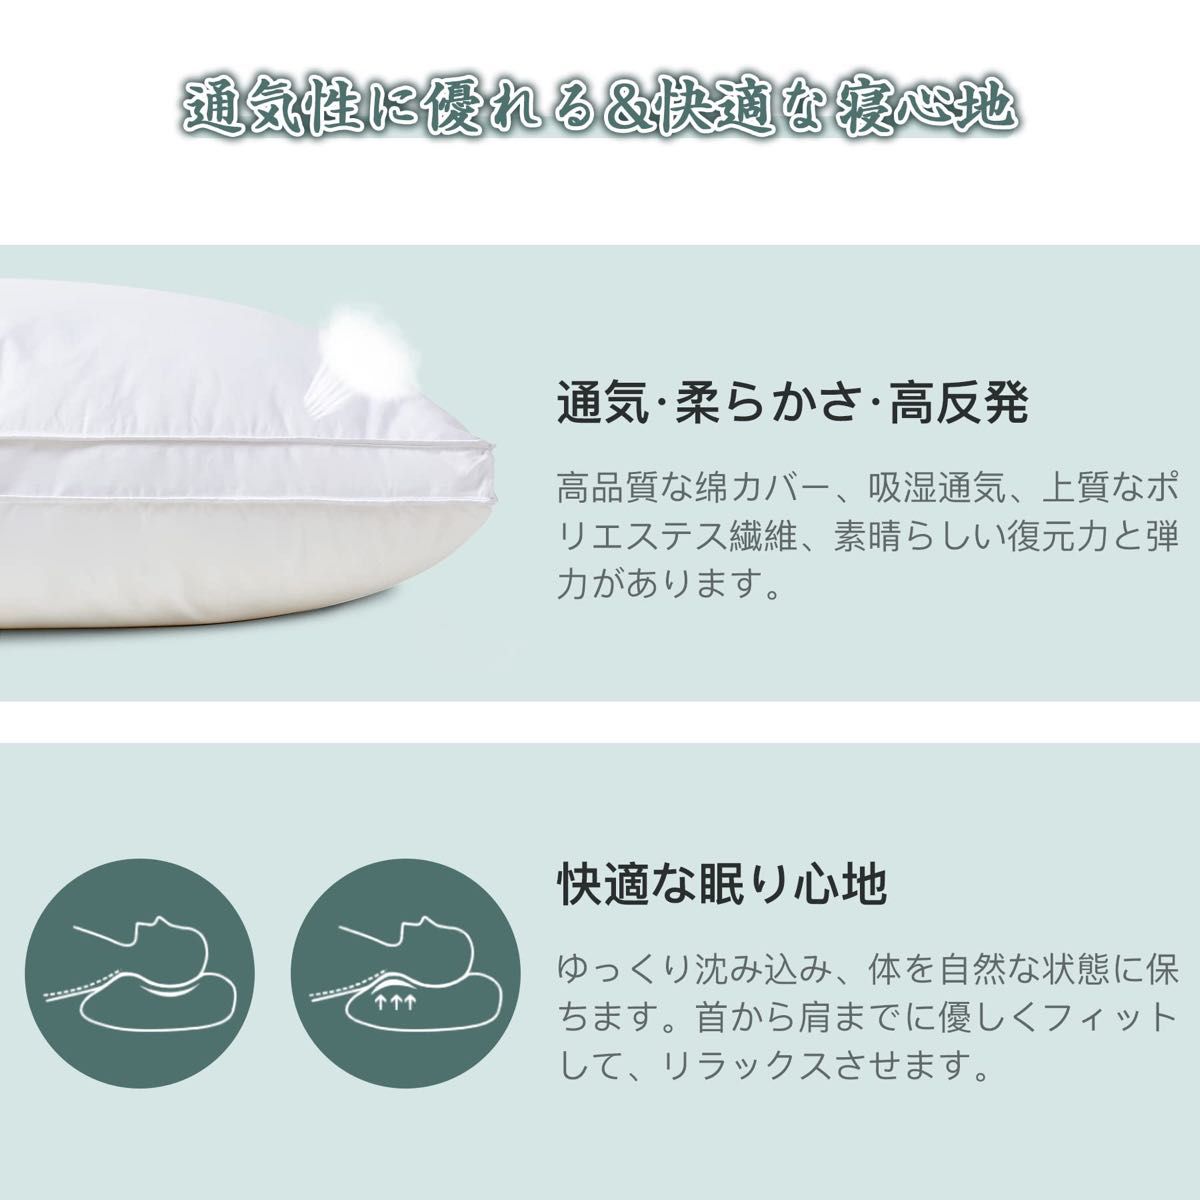 2個セット枕 まくら ホテル仕様 高反発枕 横向き対応 丸洗い可能 立体構造 ホワイト(長さ63cm*幅43cm高さ22cm) 